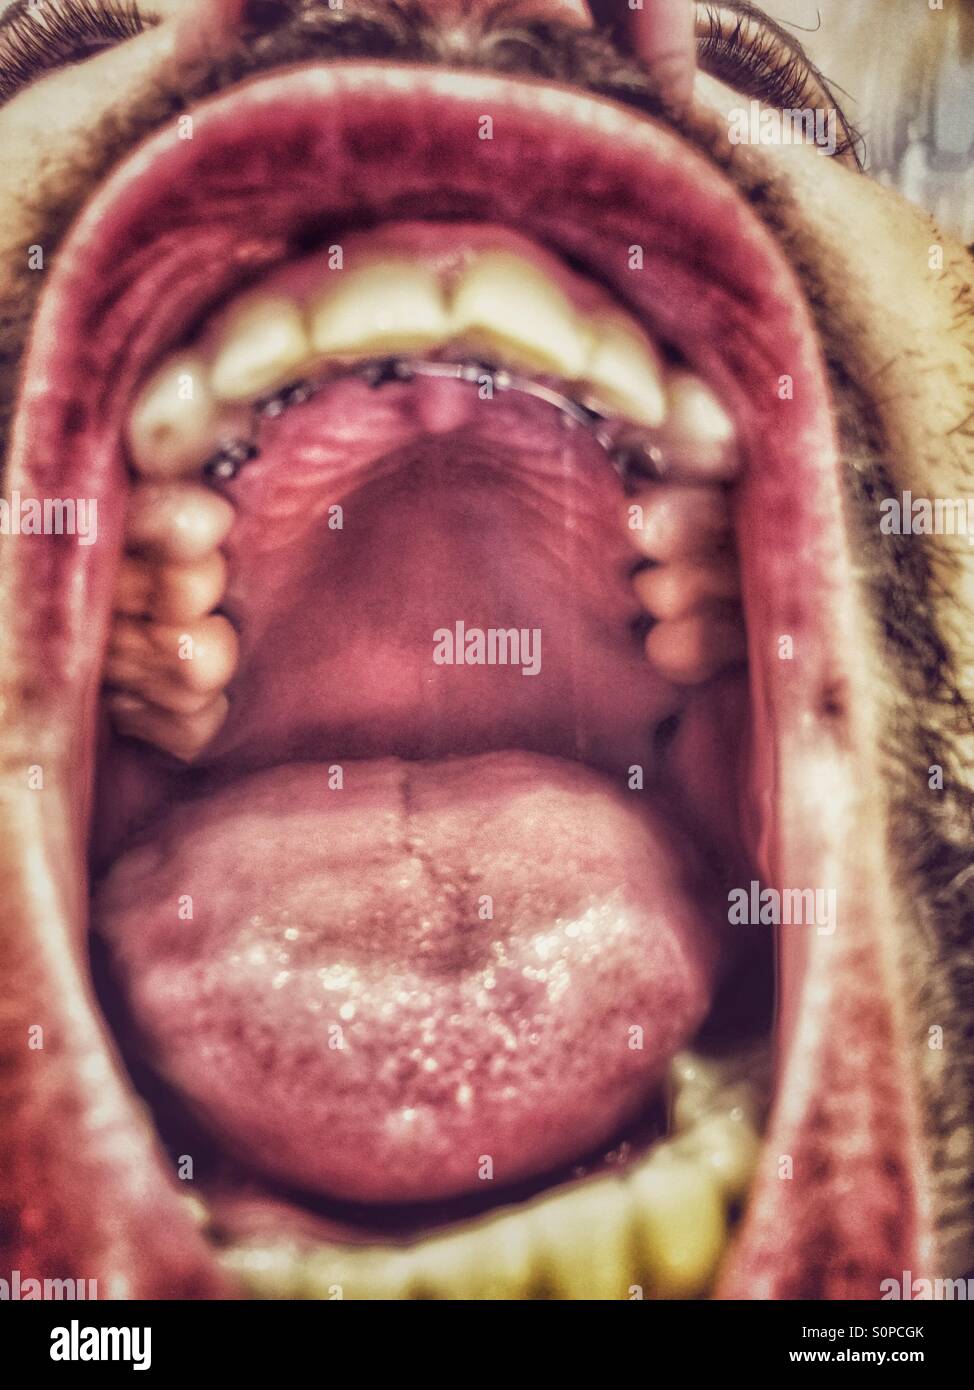 Ottone,ortodontista,Invisalign,denti,lingua rossa,grande lingua,grande bocca,uomo barbuto,denti gialli,dentisti,linea di cromo. Foto Stock